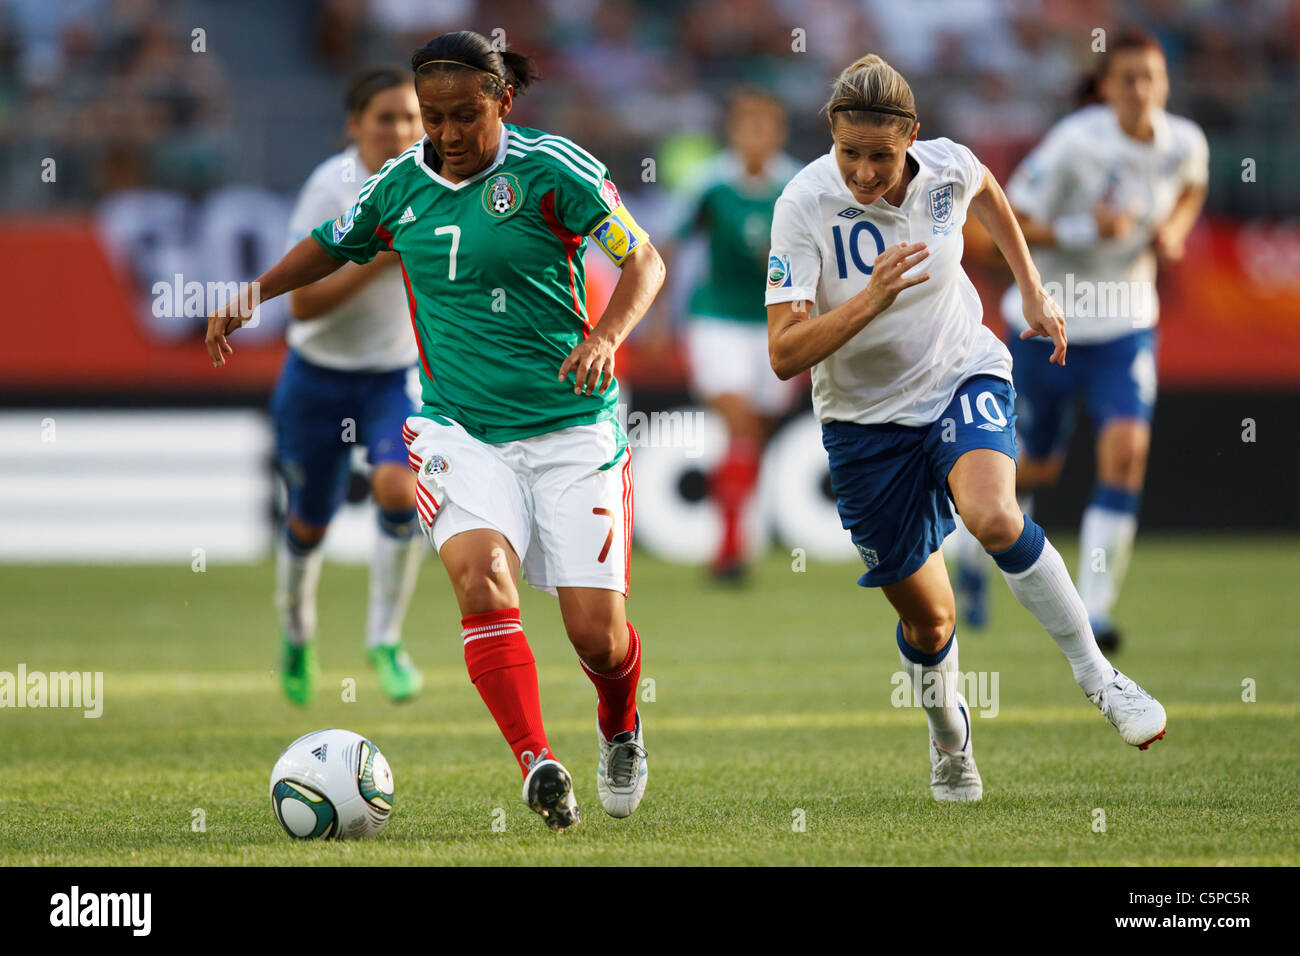 Juana Lopez von Mexiko (7) treibt den Ball gegen Kelly Smith aus England (10) während eines 2011 Frauen WM-Fußballspiel. Stockfoto